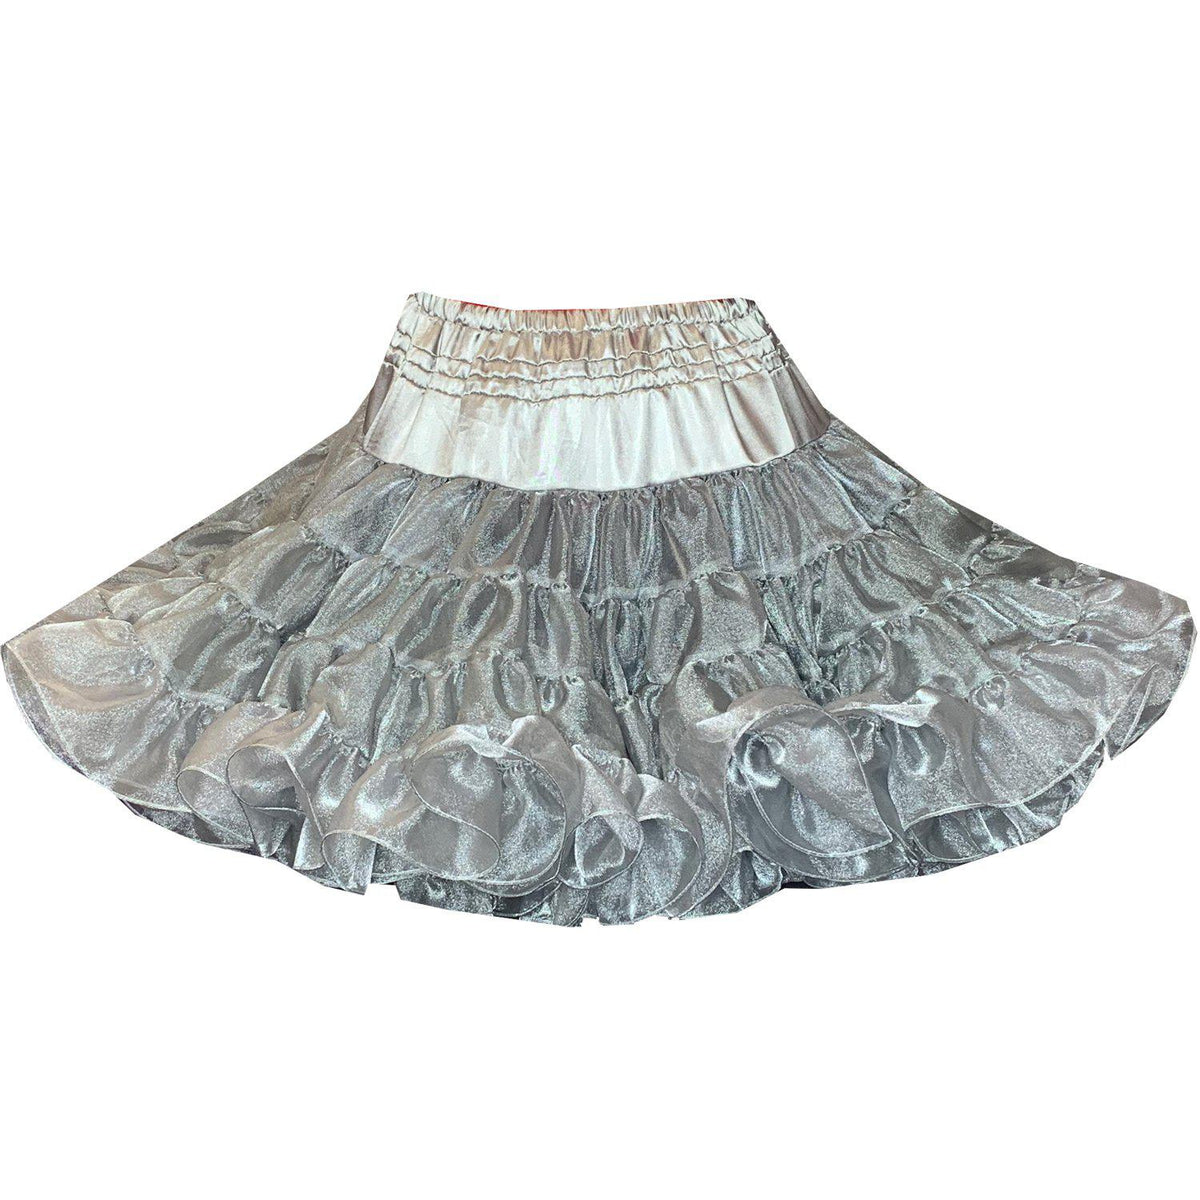 Crystal Petticoat, Petticoat - Square Up Fashions